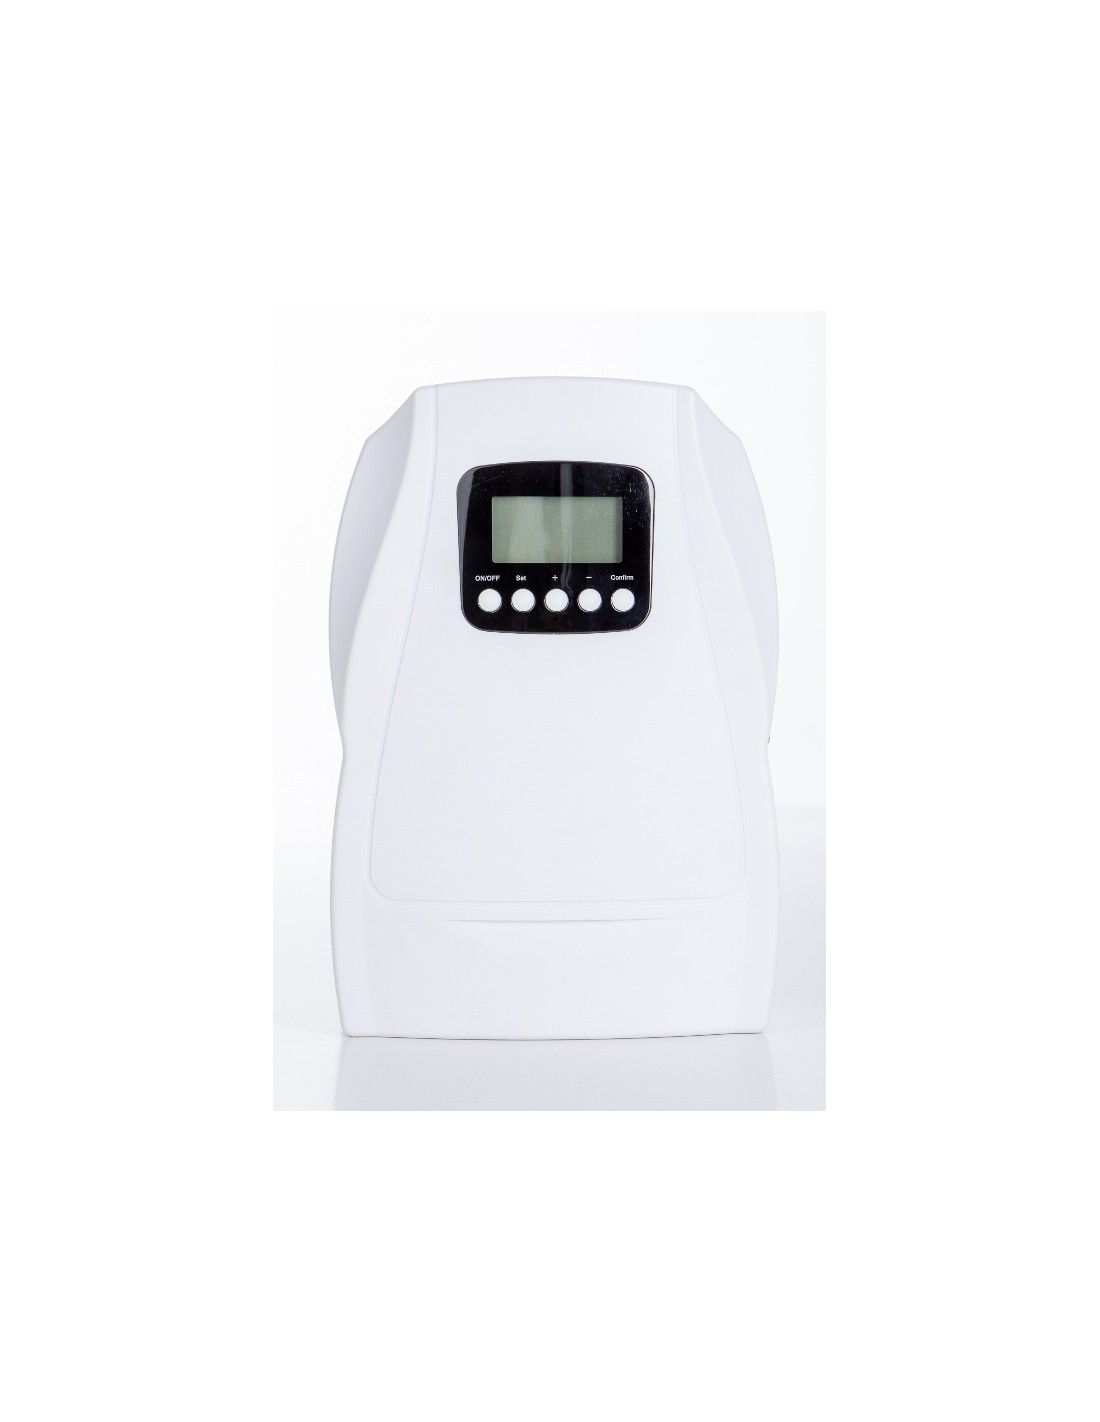 Ozonizador Doméstico Regulable. Generador de ozono y purificador de aire  por ozono (enchufe y USB) - 3D Distribucion Documental, S.L.